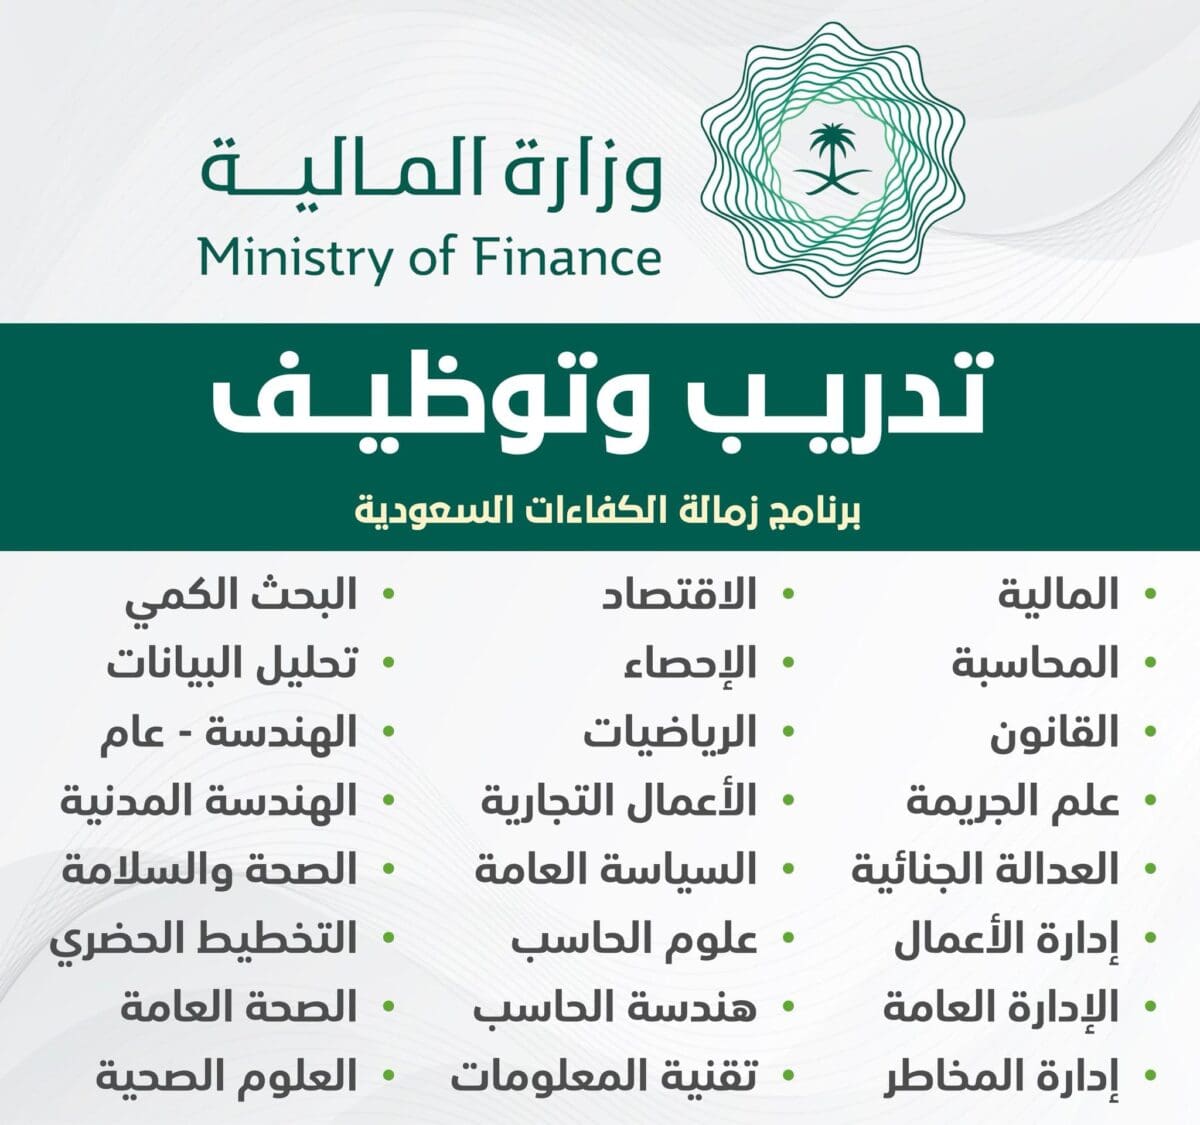 برنامج زمالة الكفاءات السعودية يفتح أبوابه للاستثمار في مستقبلك المهني